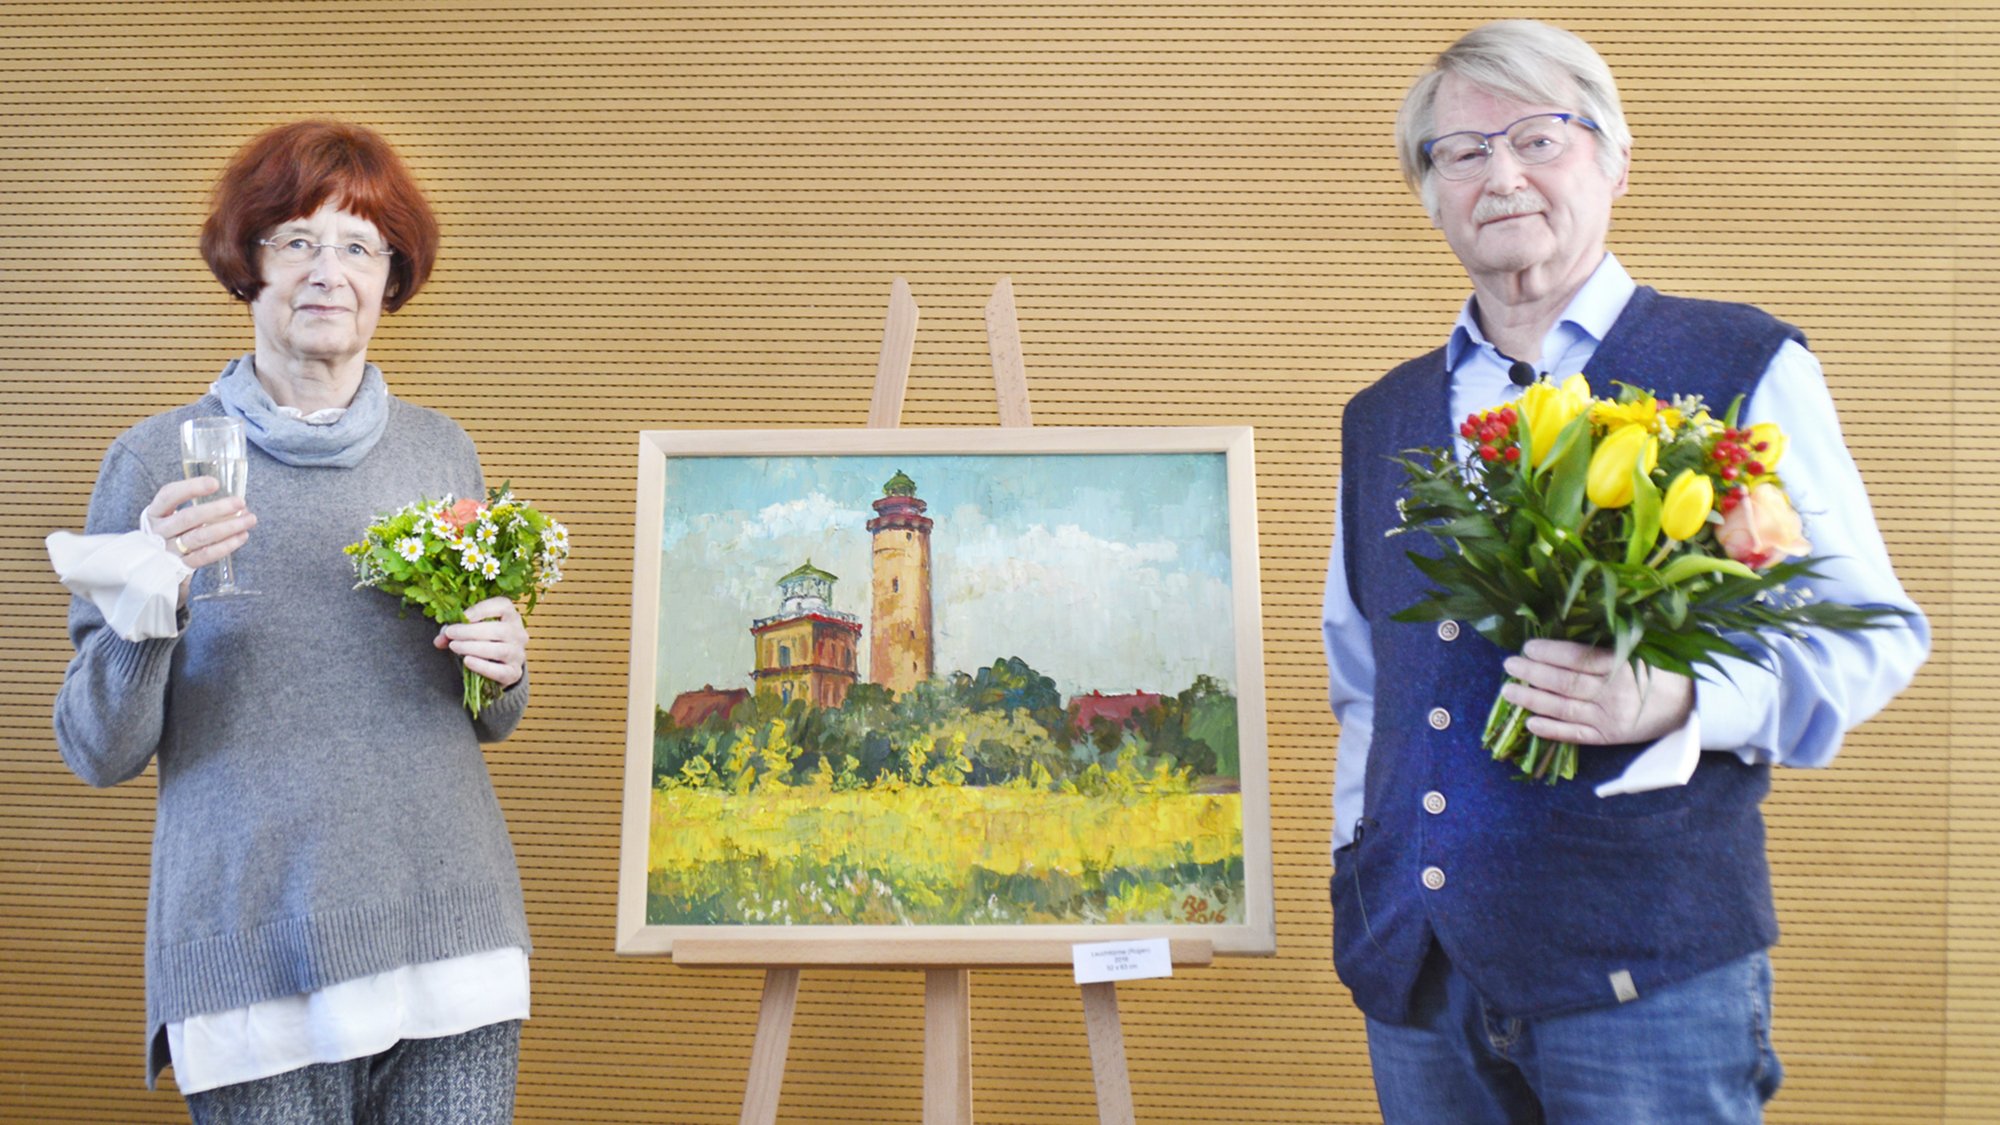 Foto: Uta und wieland Rödel, in der Bildmitte ein Gemälde